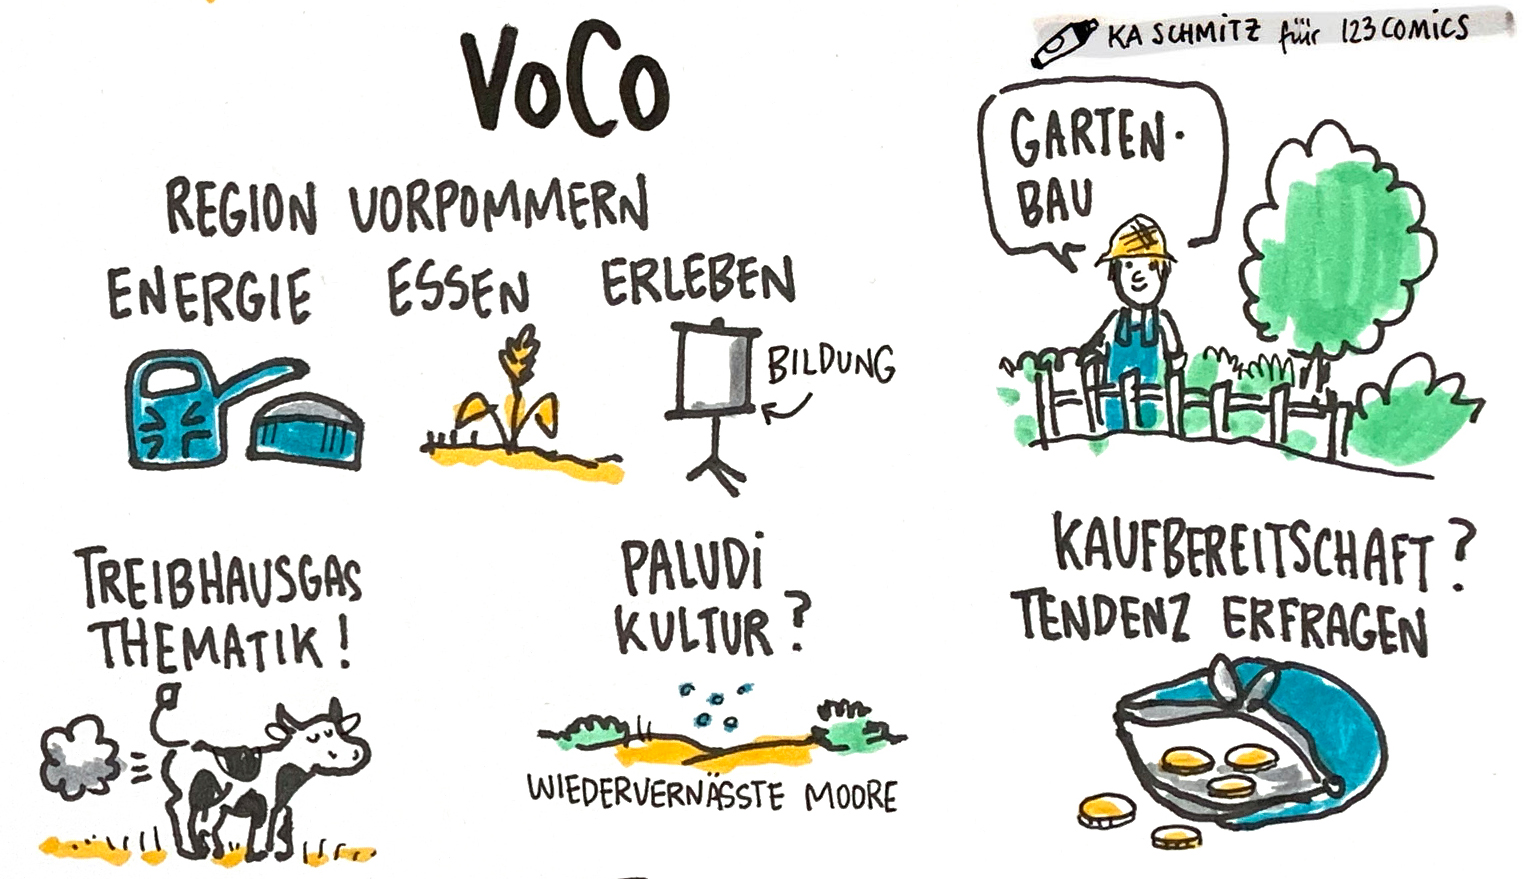 Sketch VoCo von der Statuskonferenz 2020 (Bild: 123comics)